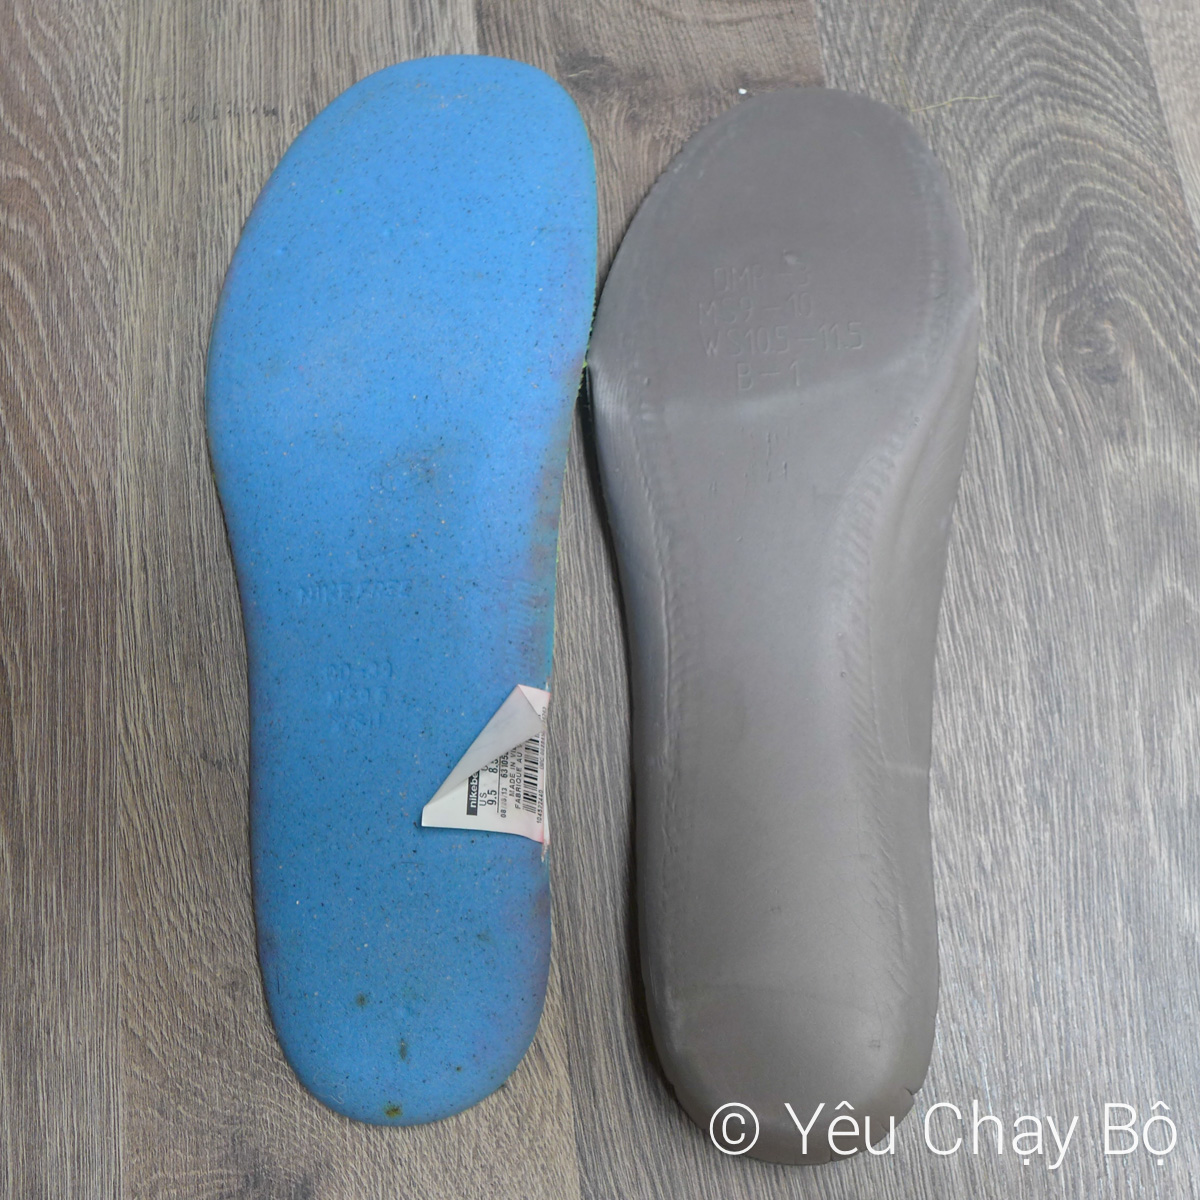 Vật liệu chế tạo miếng lót giày của Nike Zoom Fly (bên phải) khác so với Nike Free Flyknit 4.0 (bên trái)